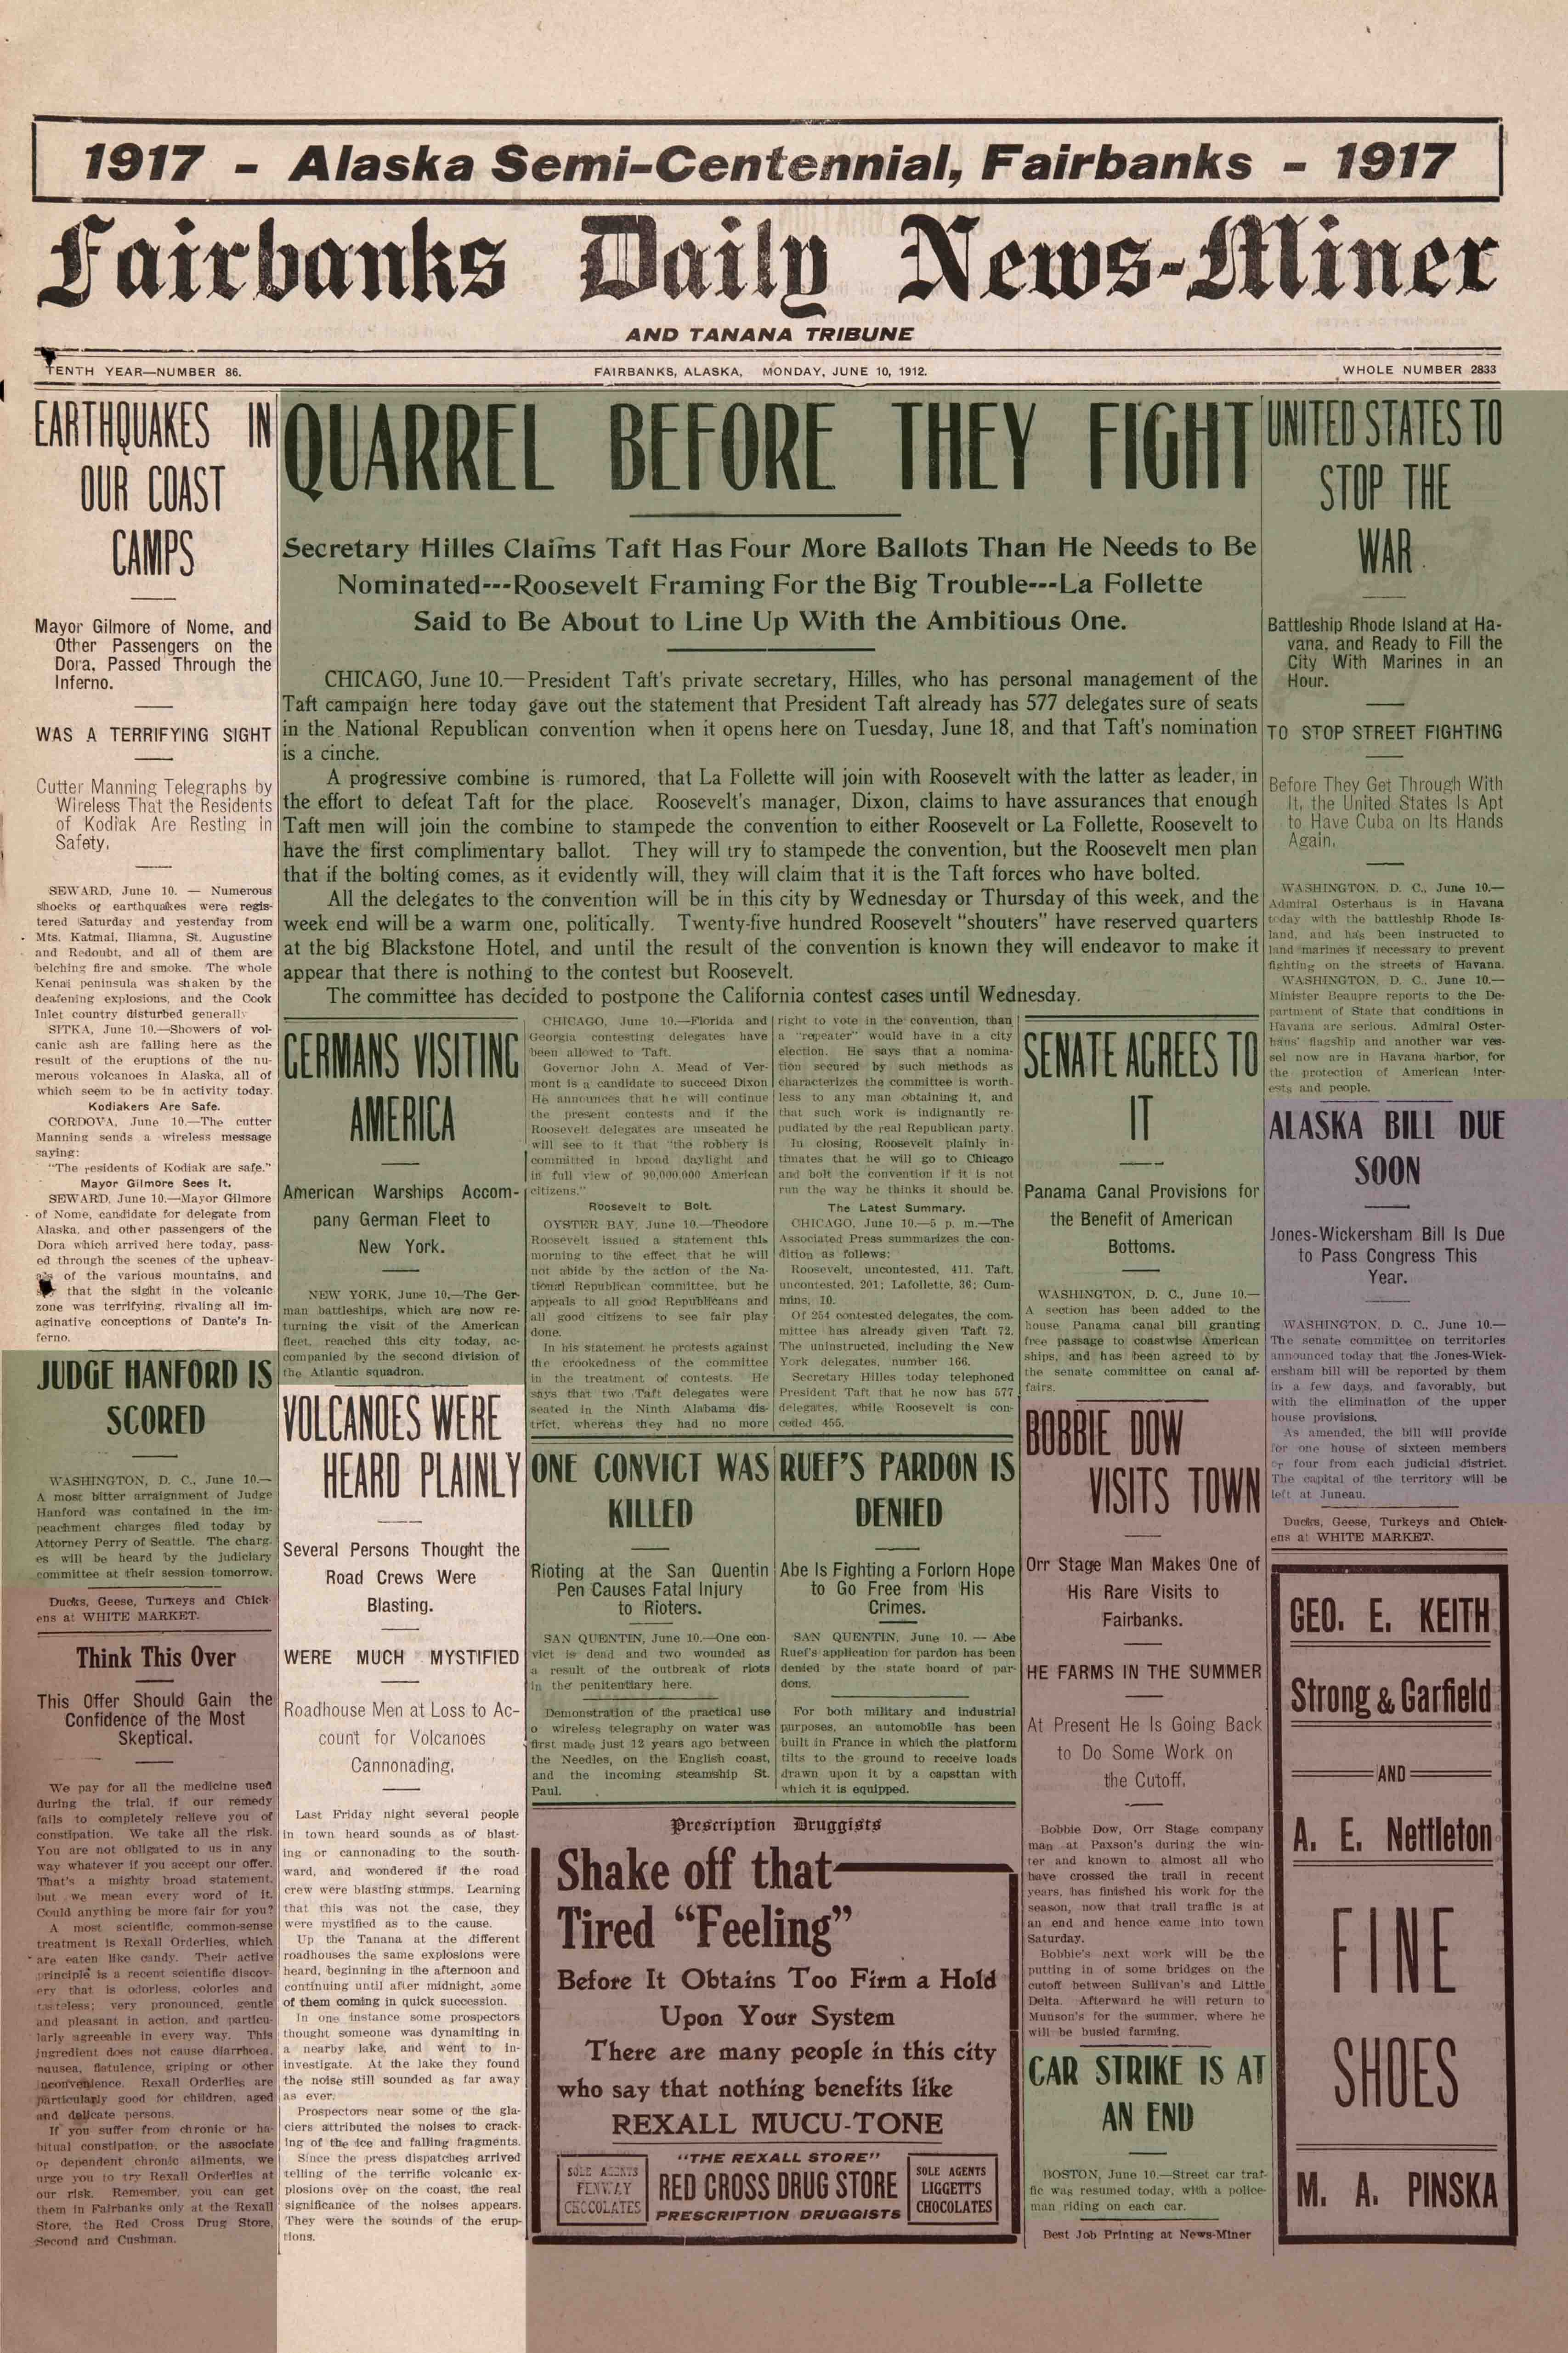 1912 June 10, Fairbanks Daily News-Miner (pg 1)